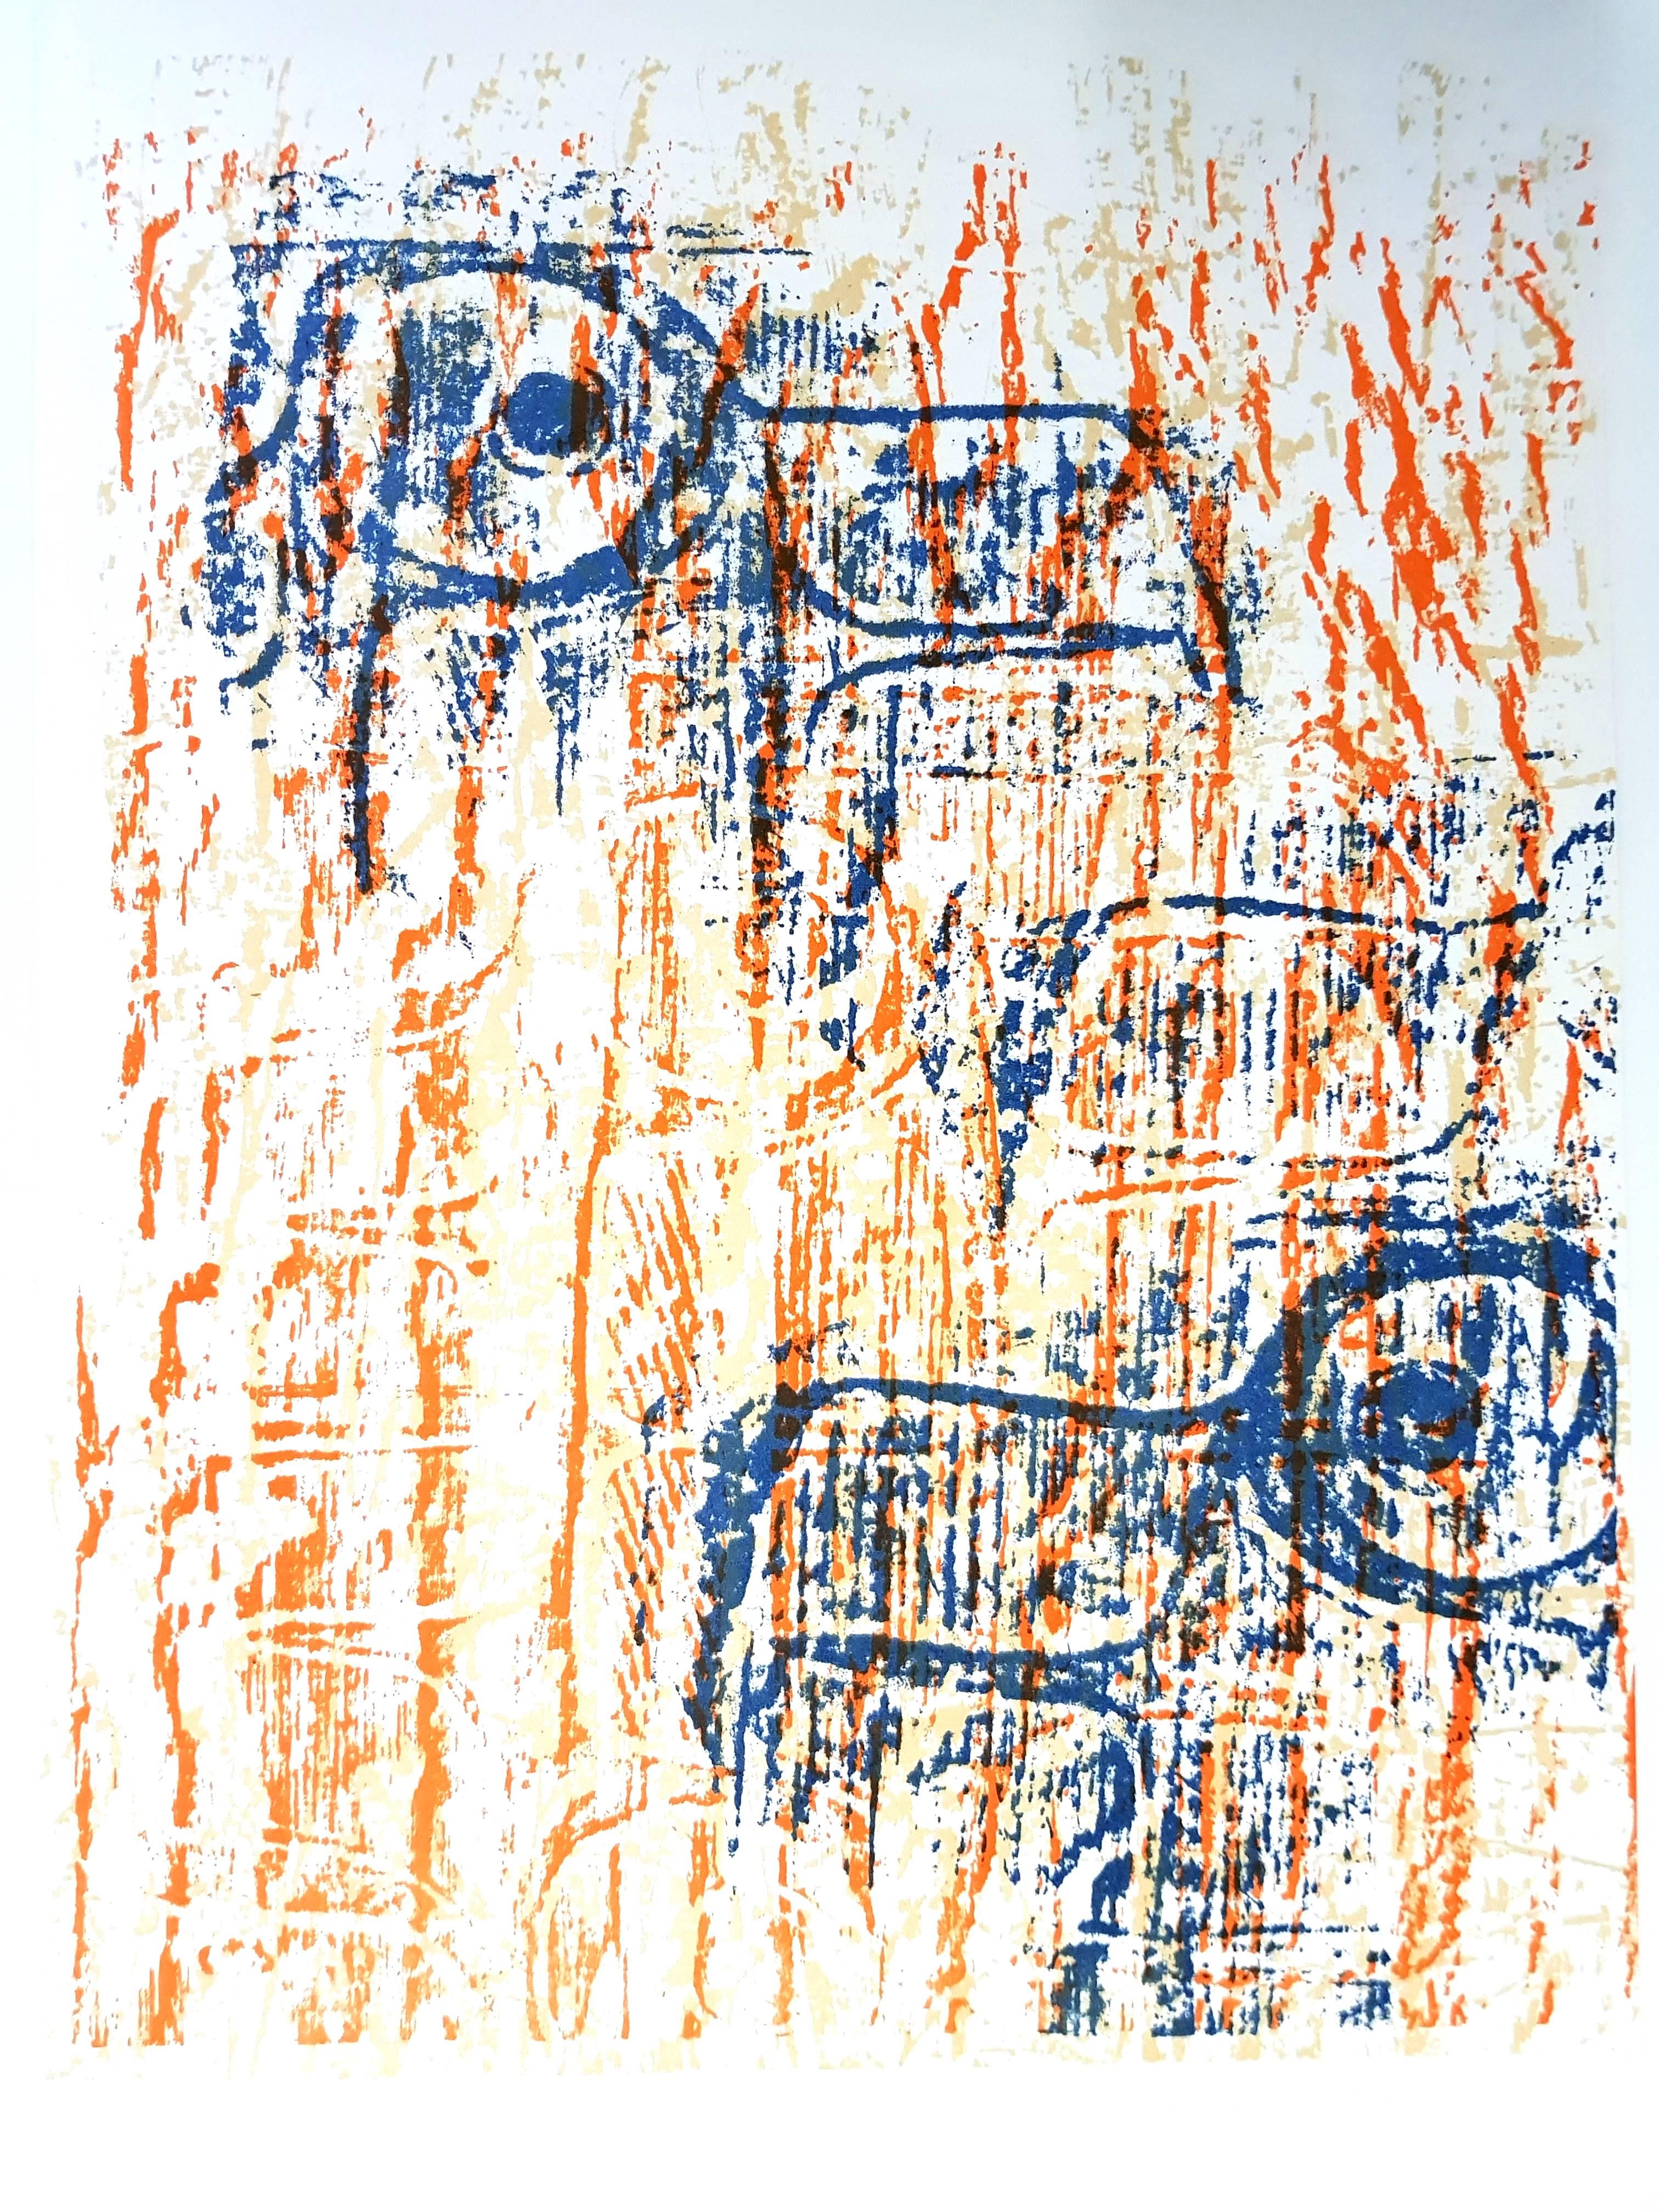 Max Ernst - Vögel -  Original-Lithographie
Vögel, 1964 (BNF, 63) 
Abmessungen: 32 x 24 cm
Revue Art de France

ax Ernst wurde in Brühl, einem Ort in der Nähe von Köln, in Deutschland geboren. Er wuchs in einer streng katholischen Familie auf, und